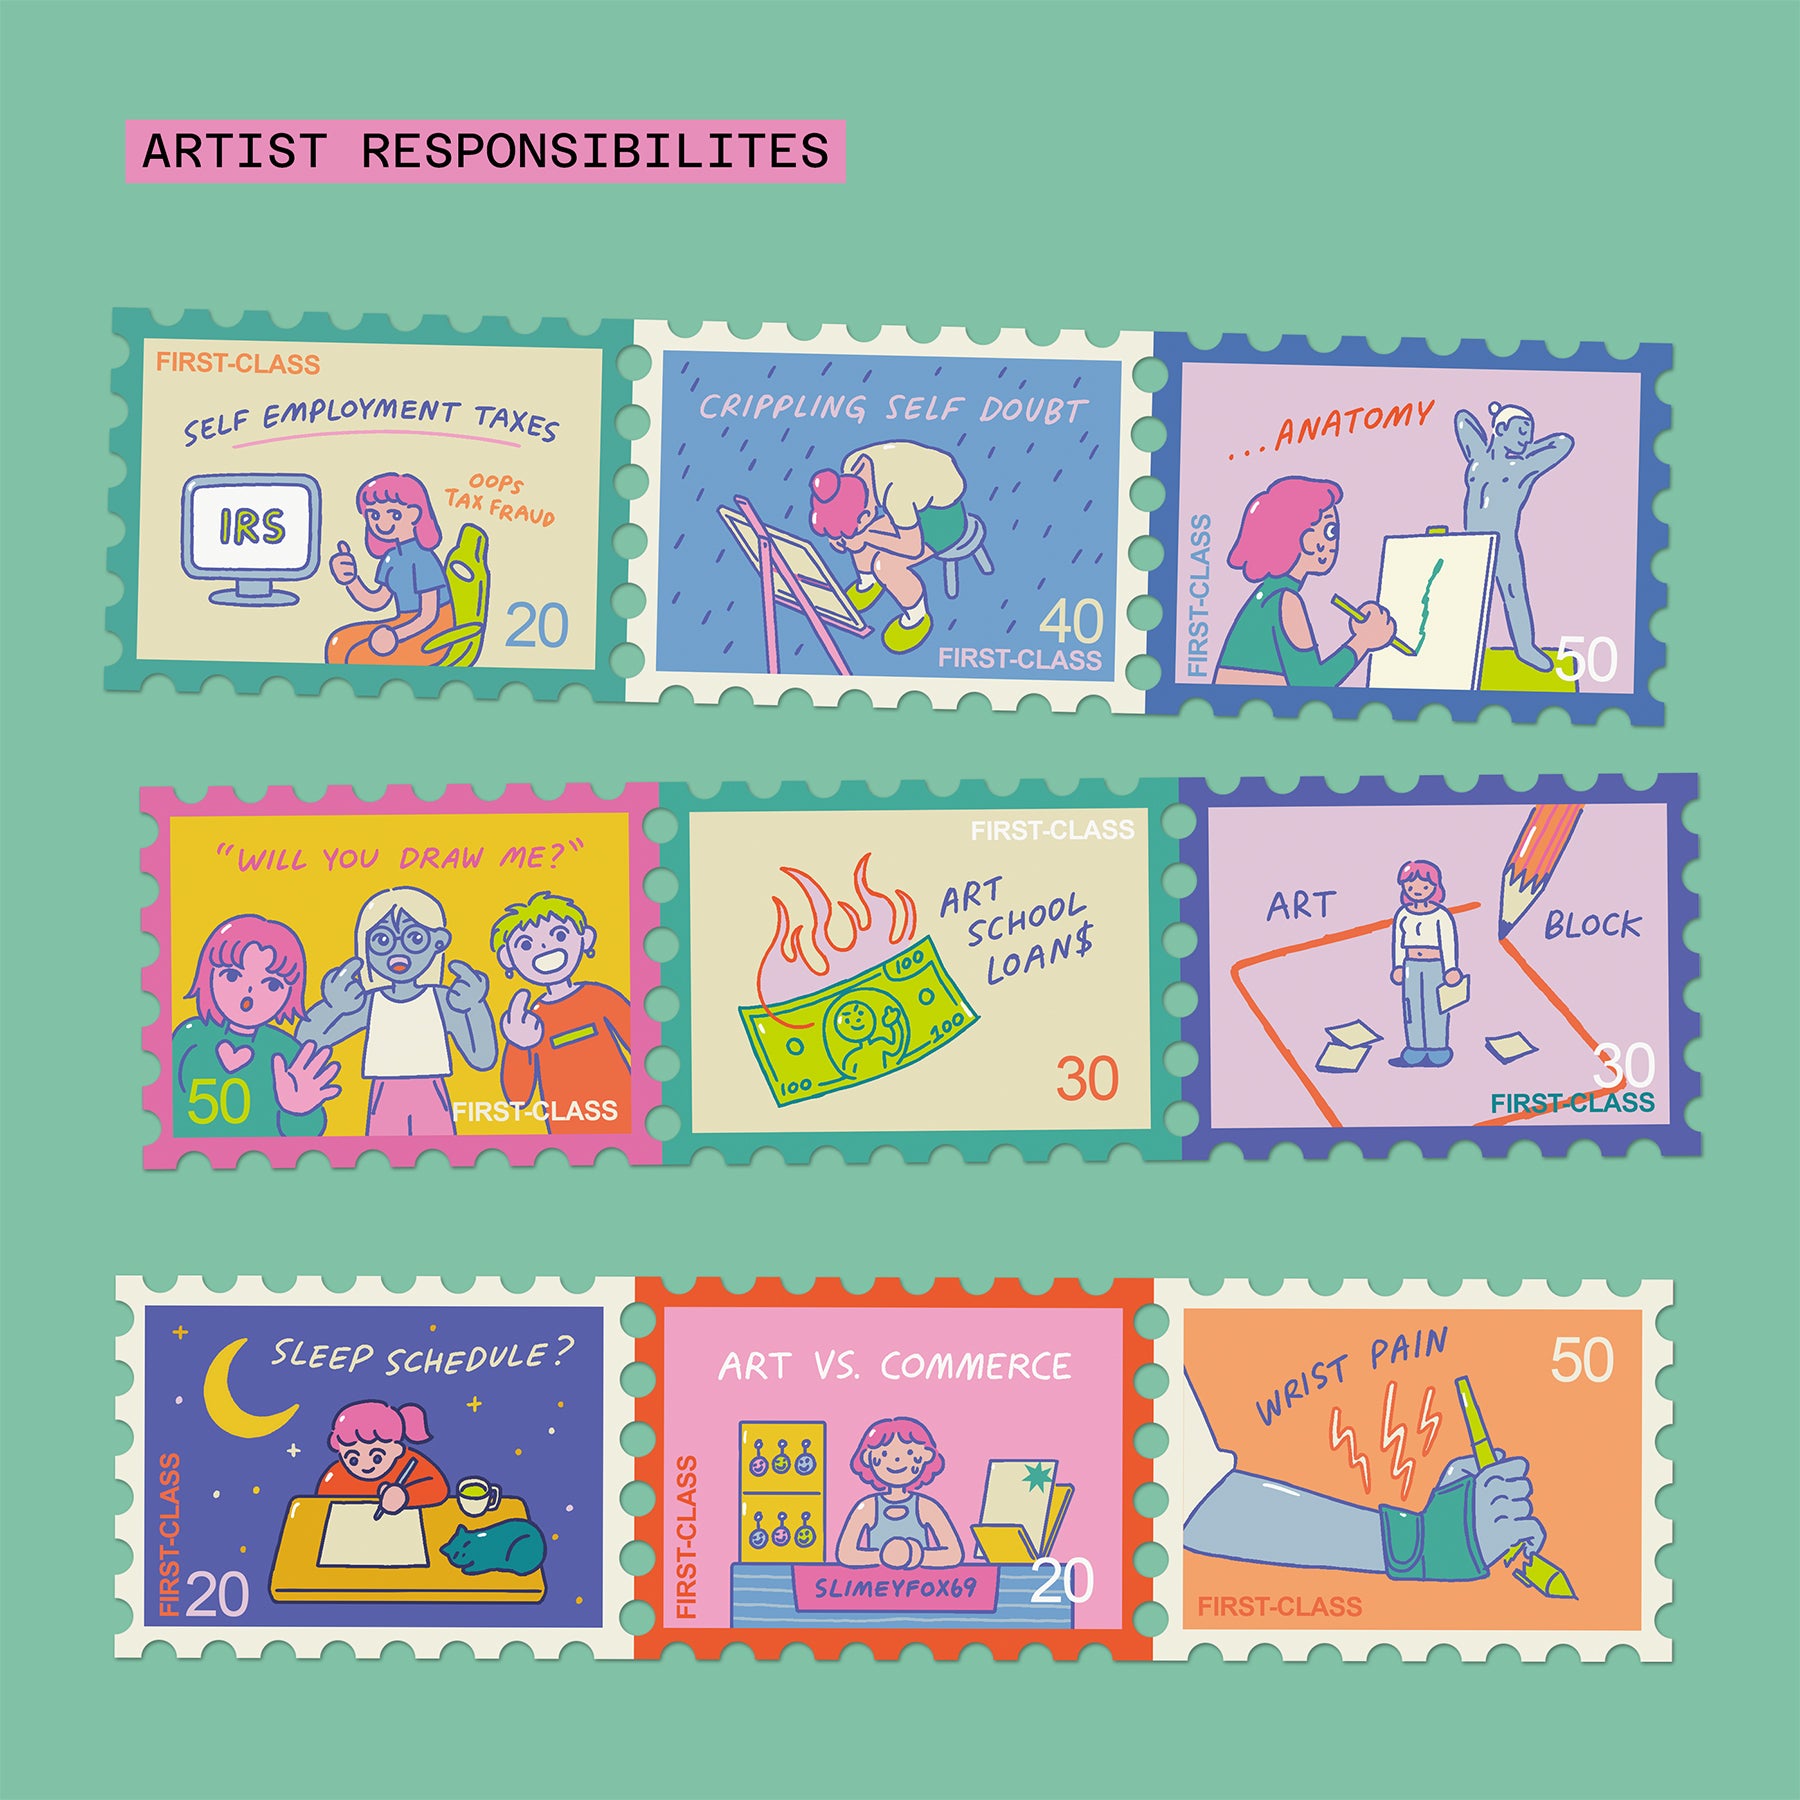 Responsibilites Stamp Washi Tape